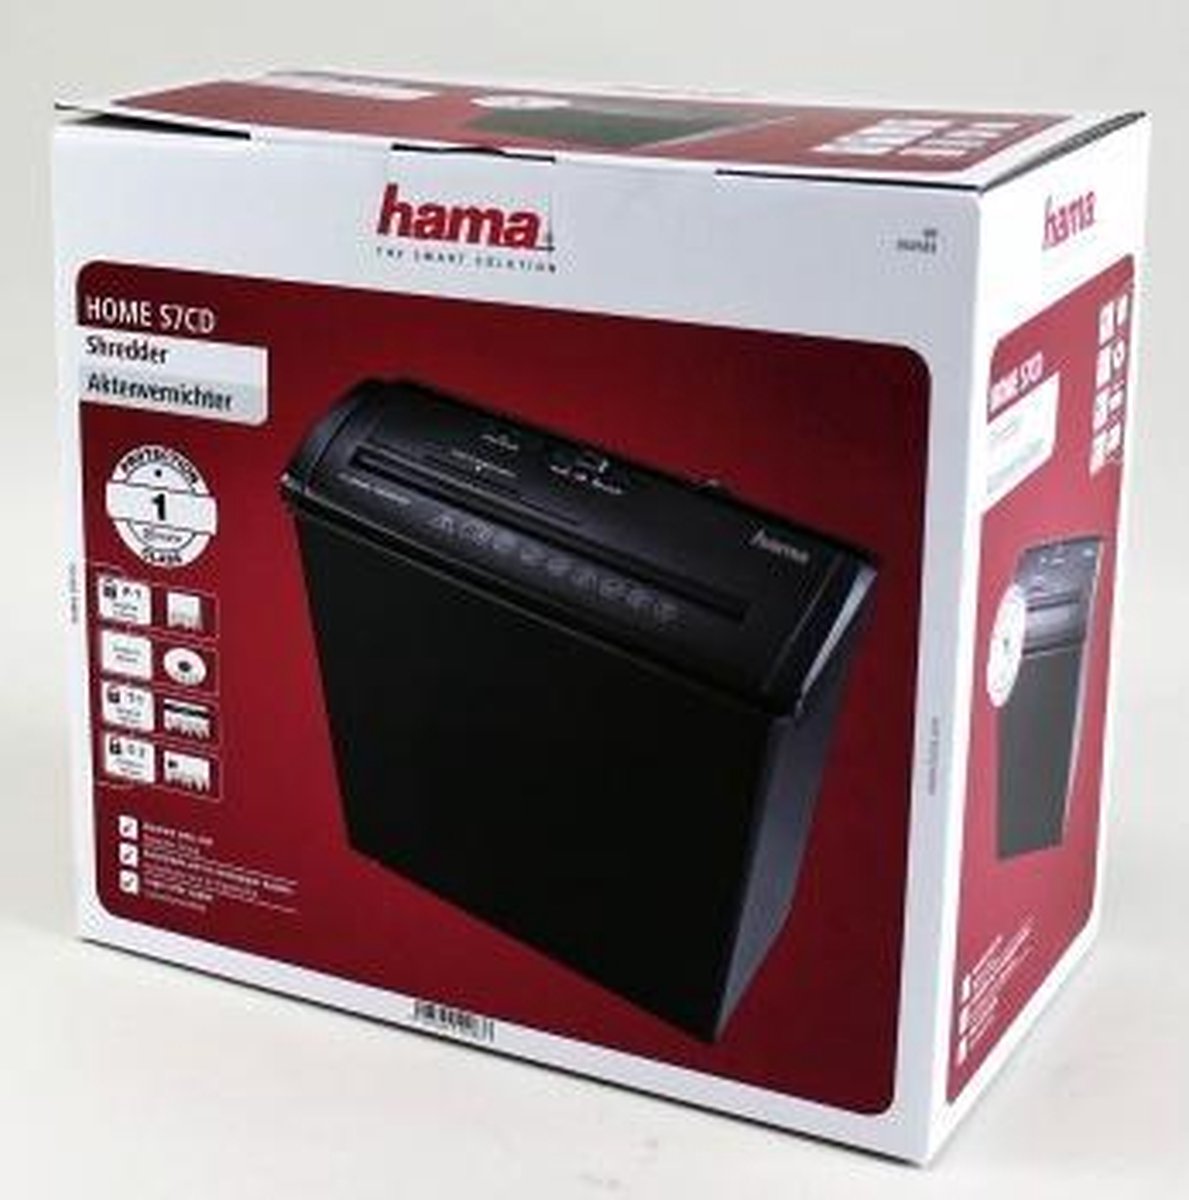 Hama Home S7CD